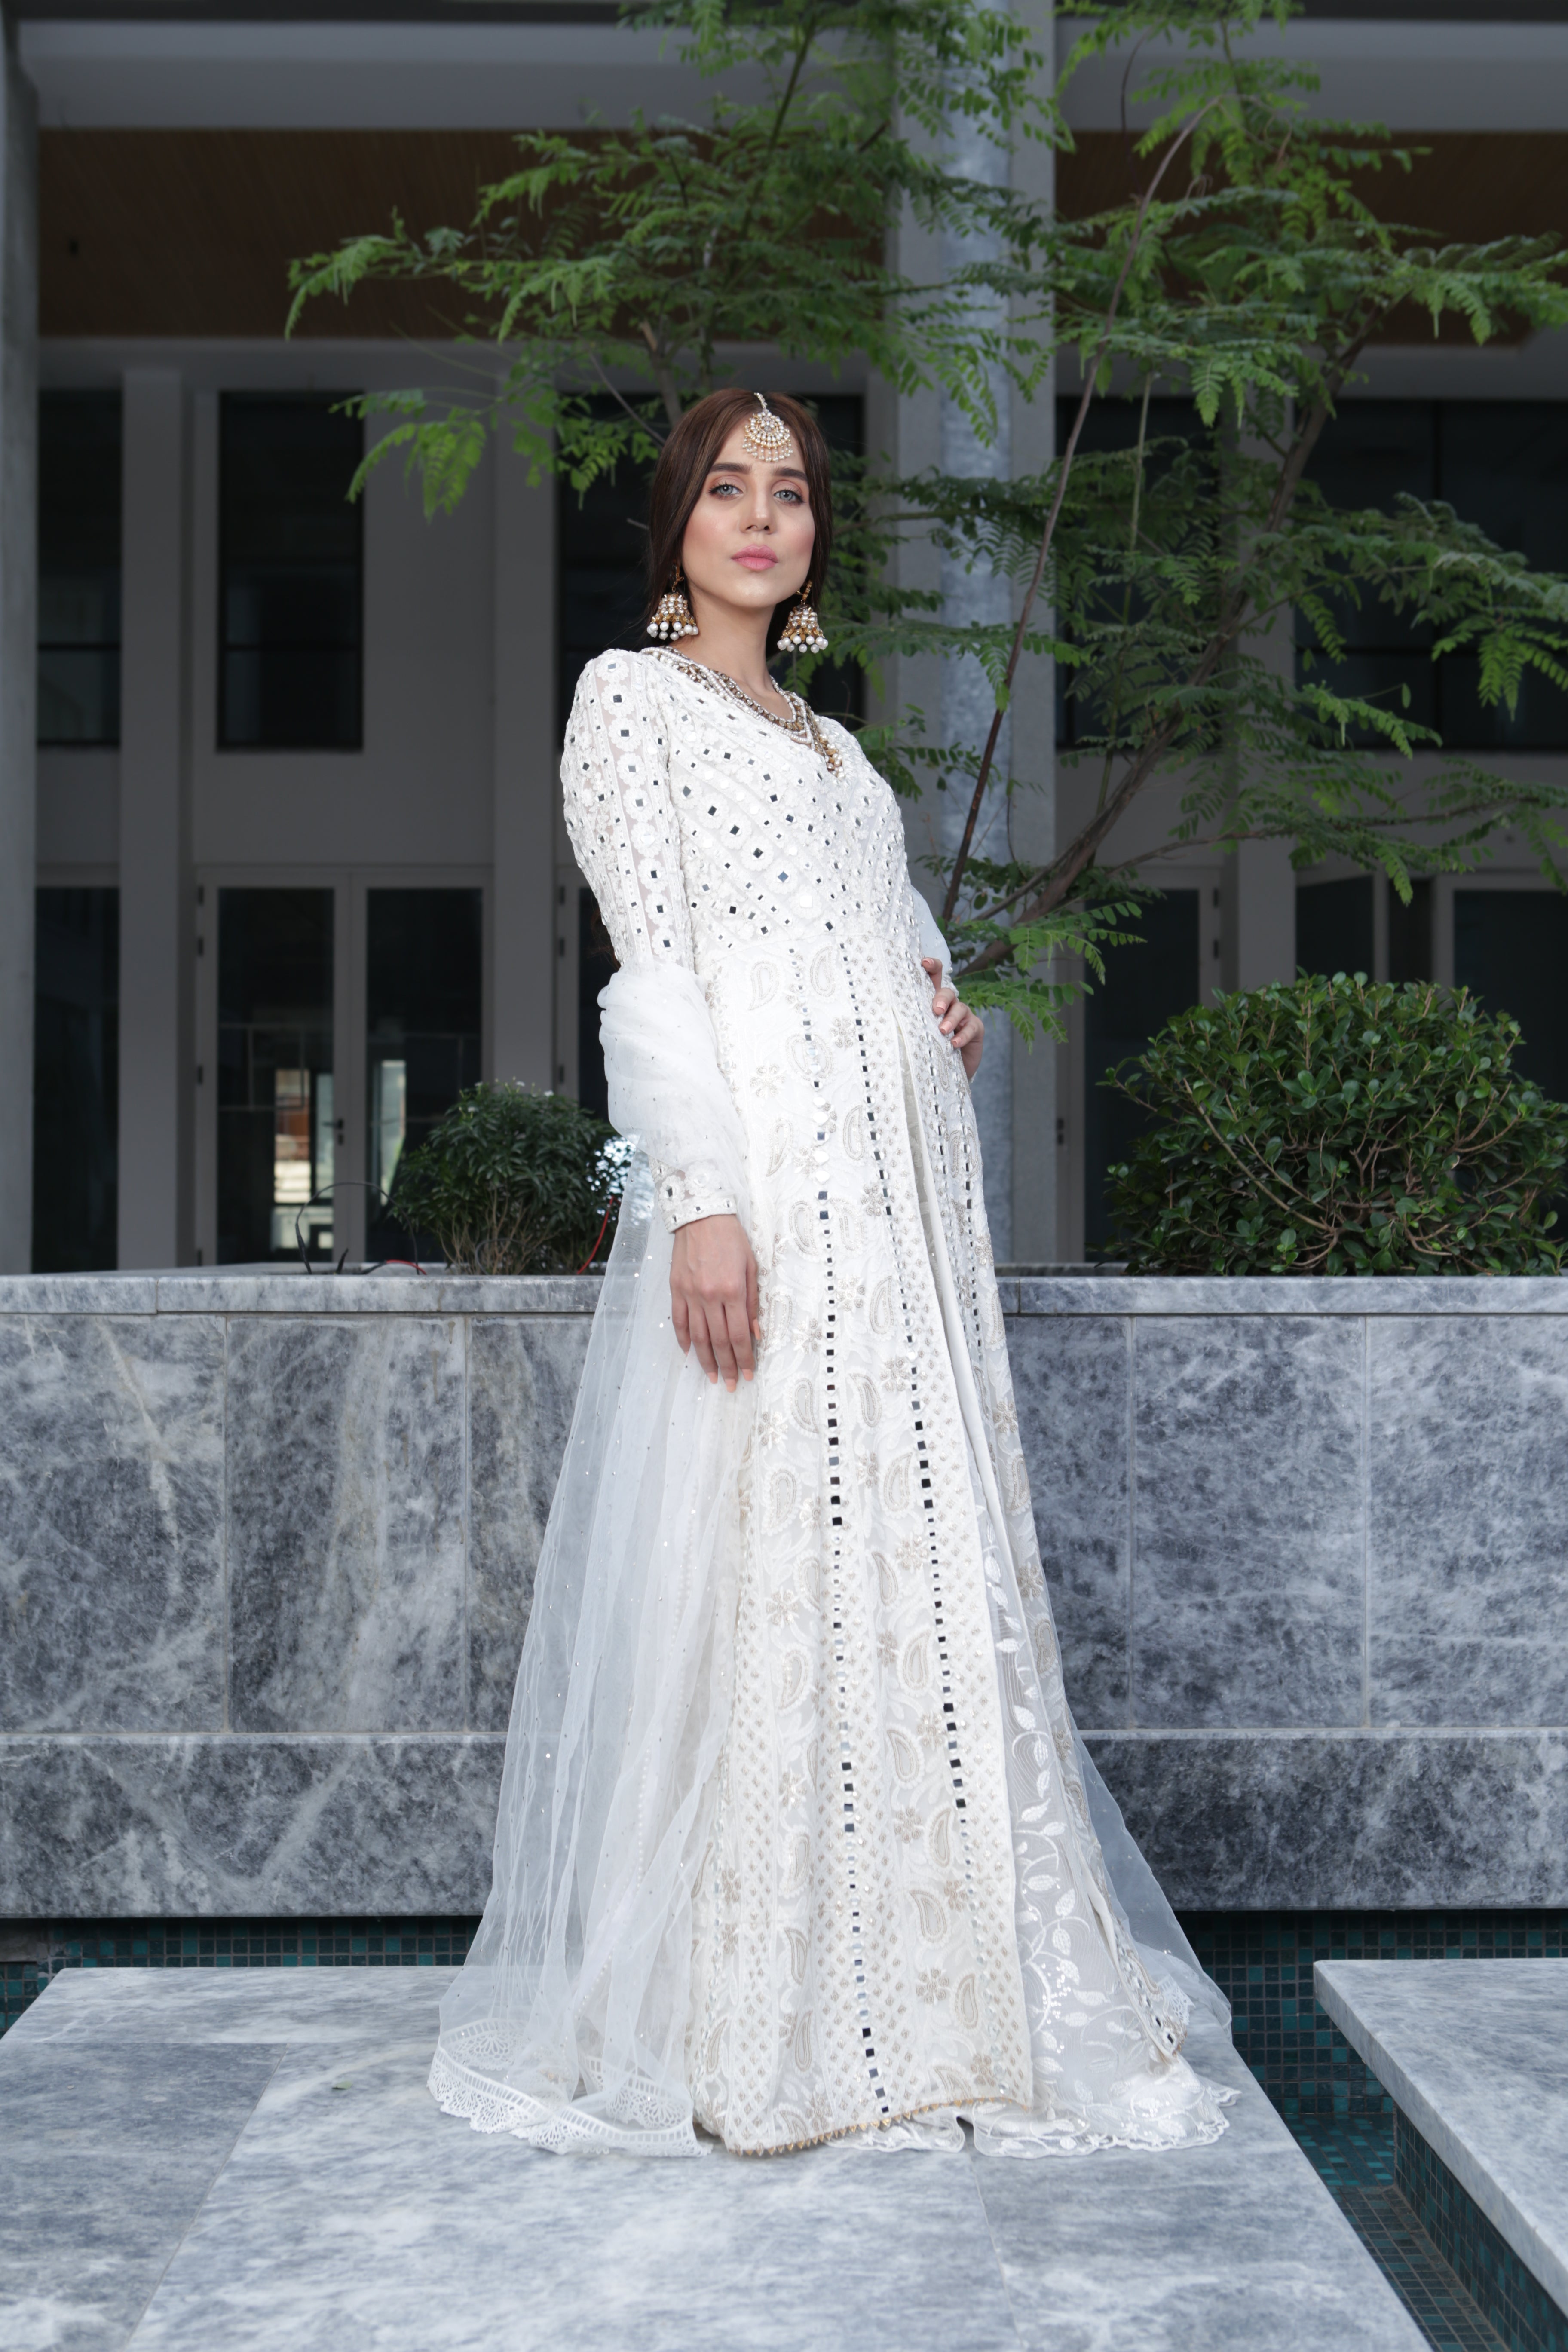 White Sheesh Mahal chikankari dress for Nikkah and Dua e khair